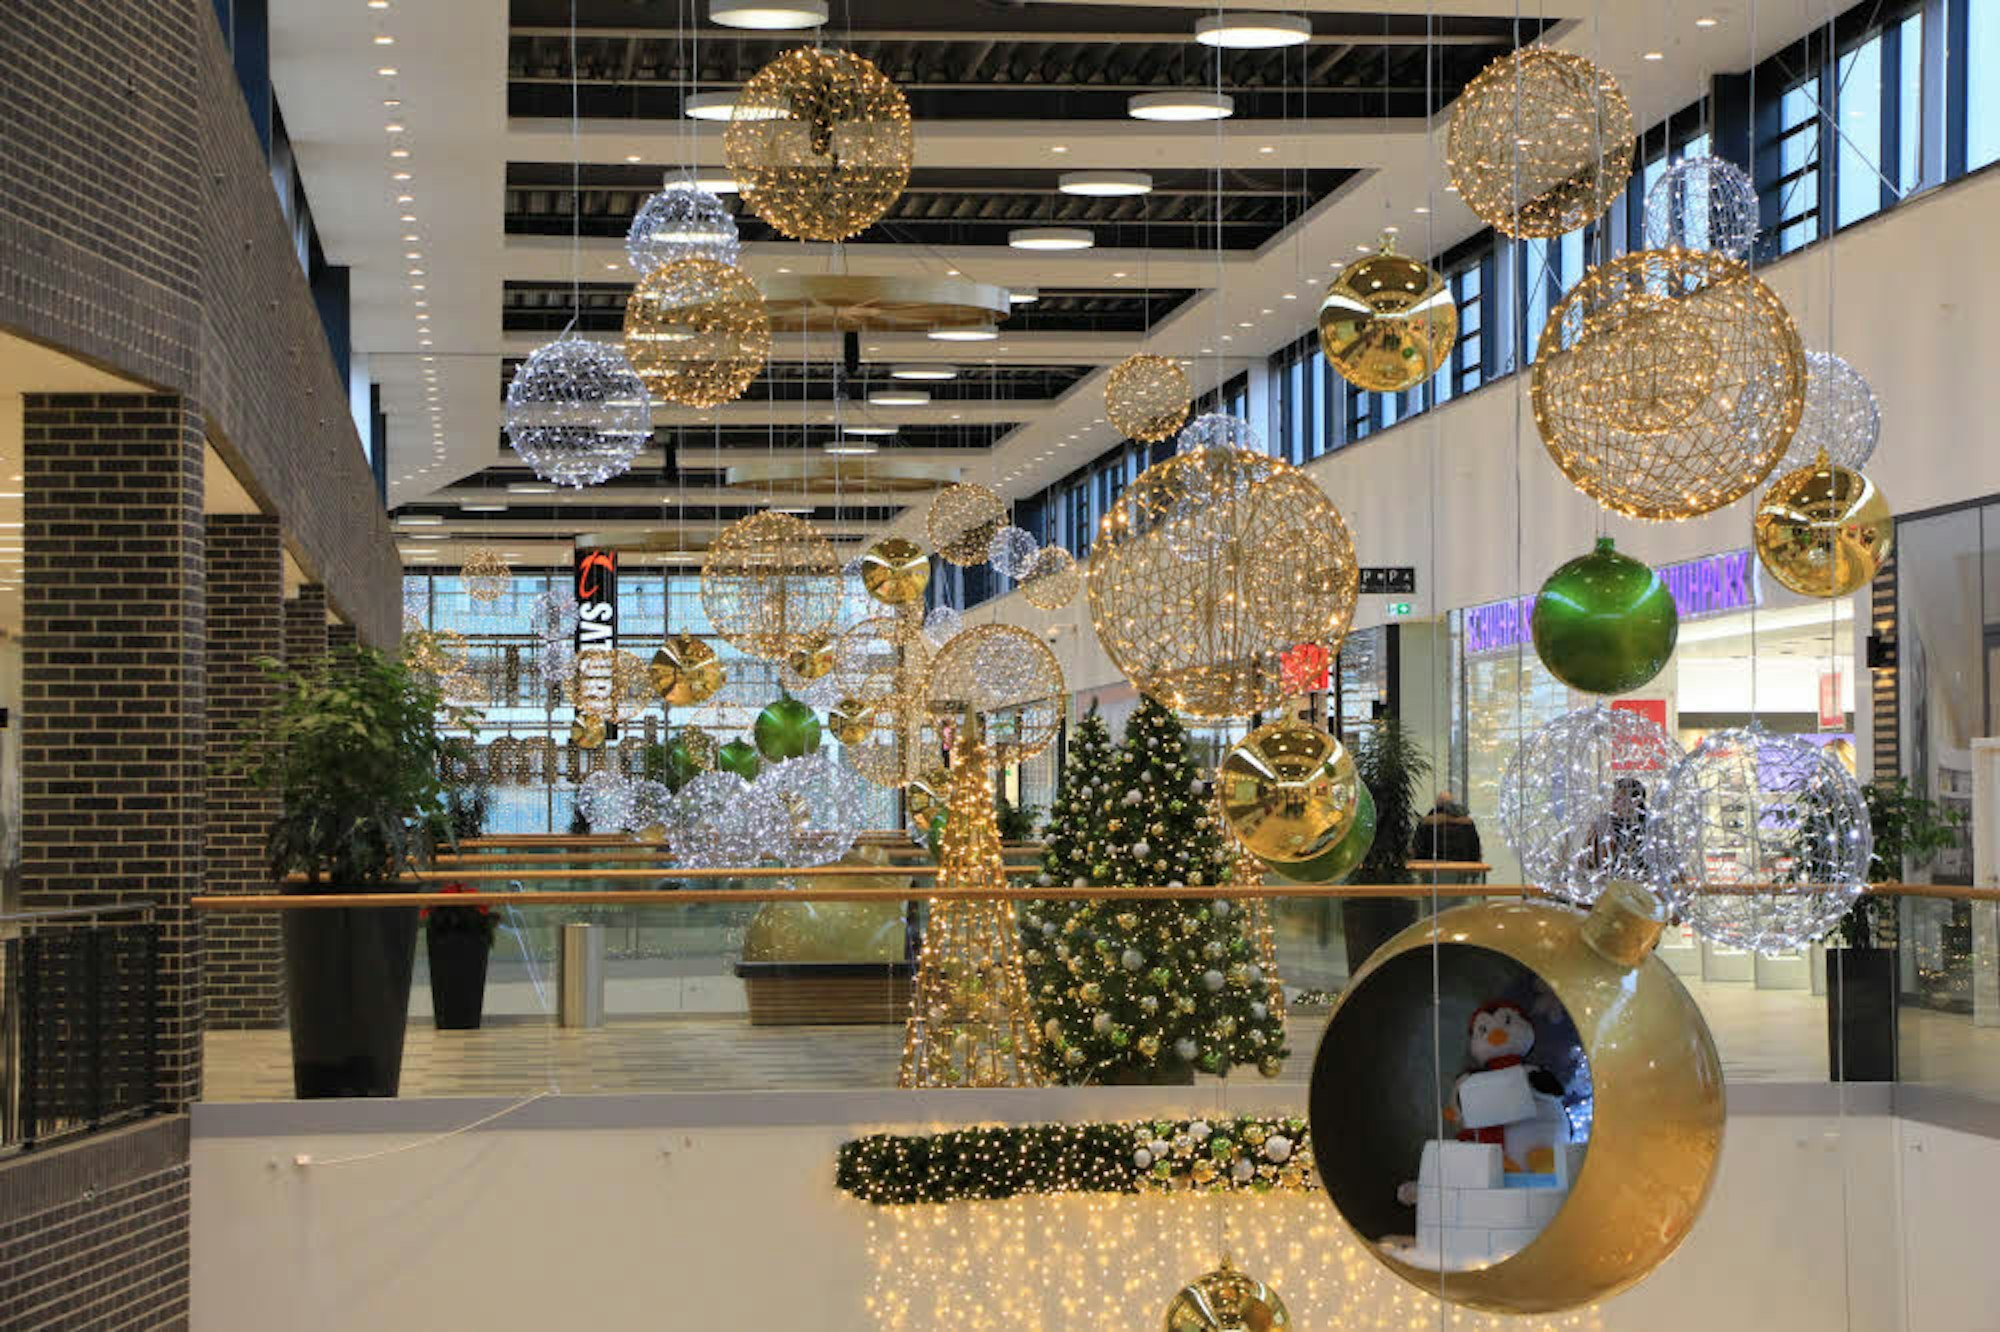 Weihnachtlich geschmückt ist das Innere. Kunden kommen nicht nur zum Einkaufen, ein großes Center wie das Huma lebt heute auch von seiner Gastronomie und seinen Erlebnisangeboten.